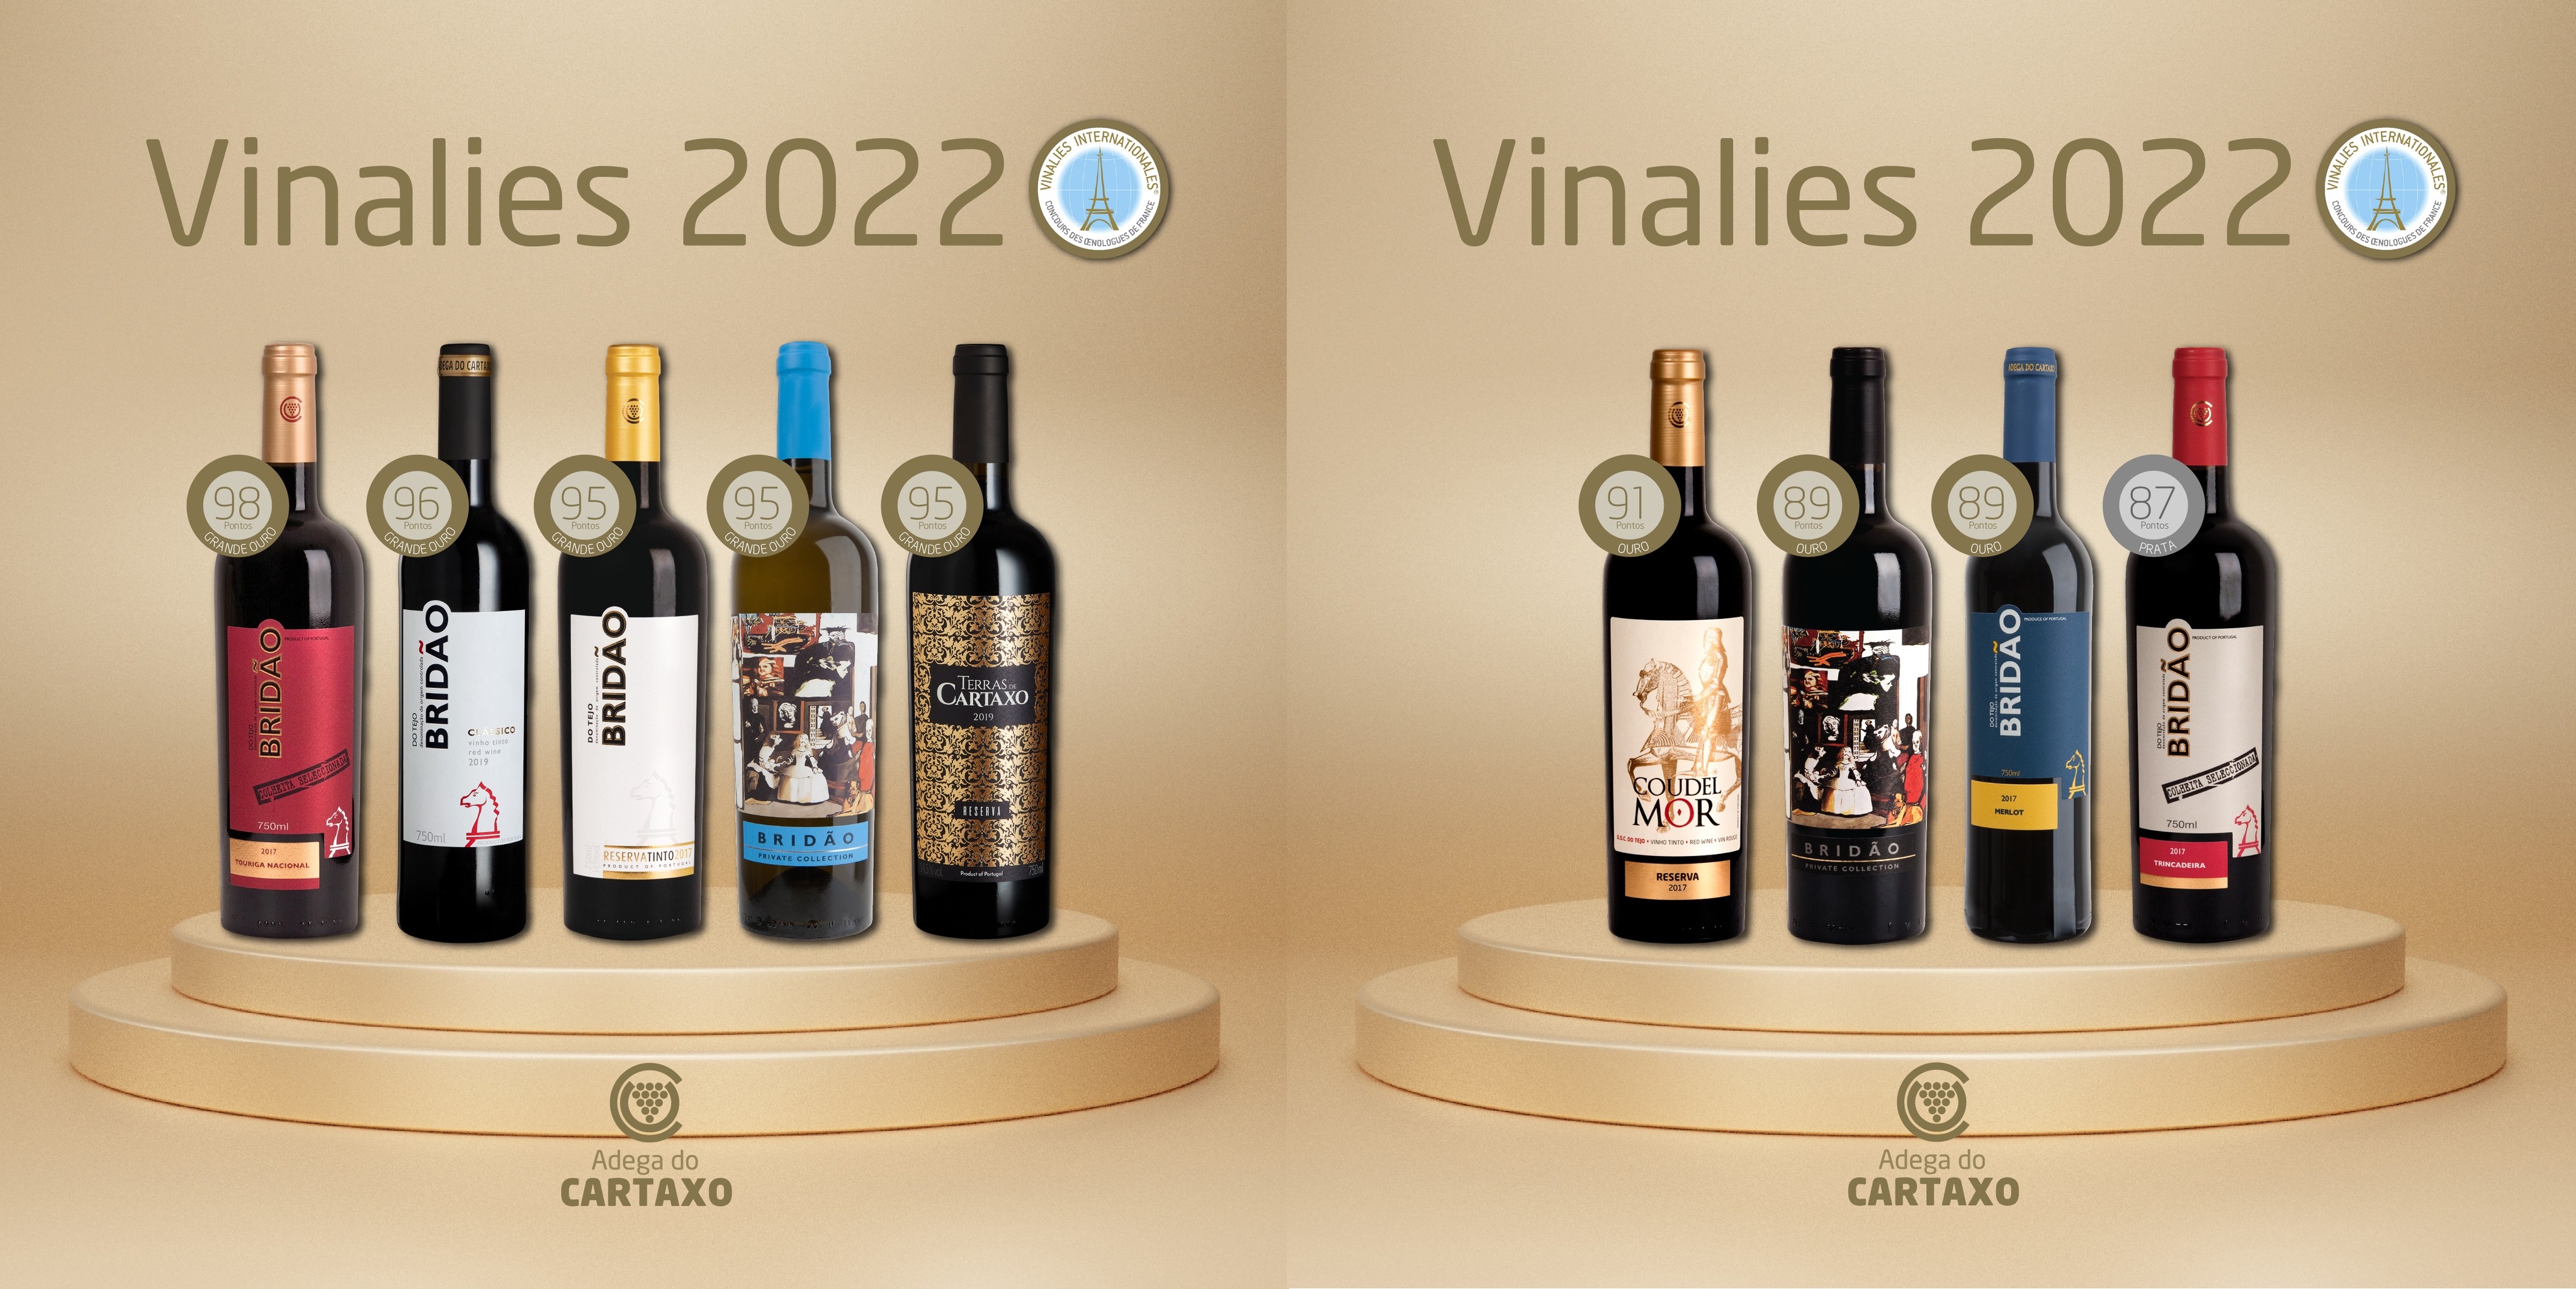 O concurso Vinalies Internationales 2022 premiou 9 vinhos da nossa Adega